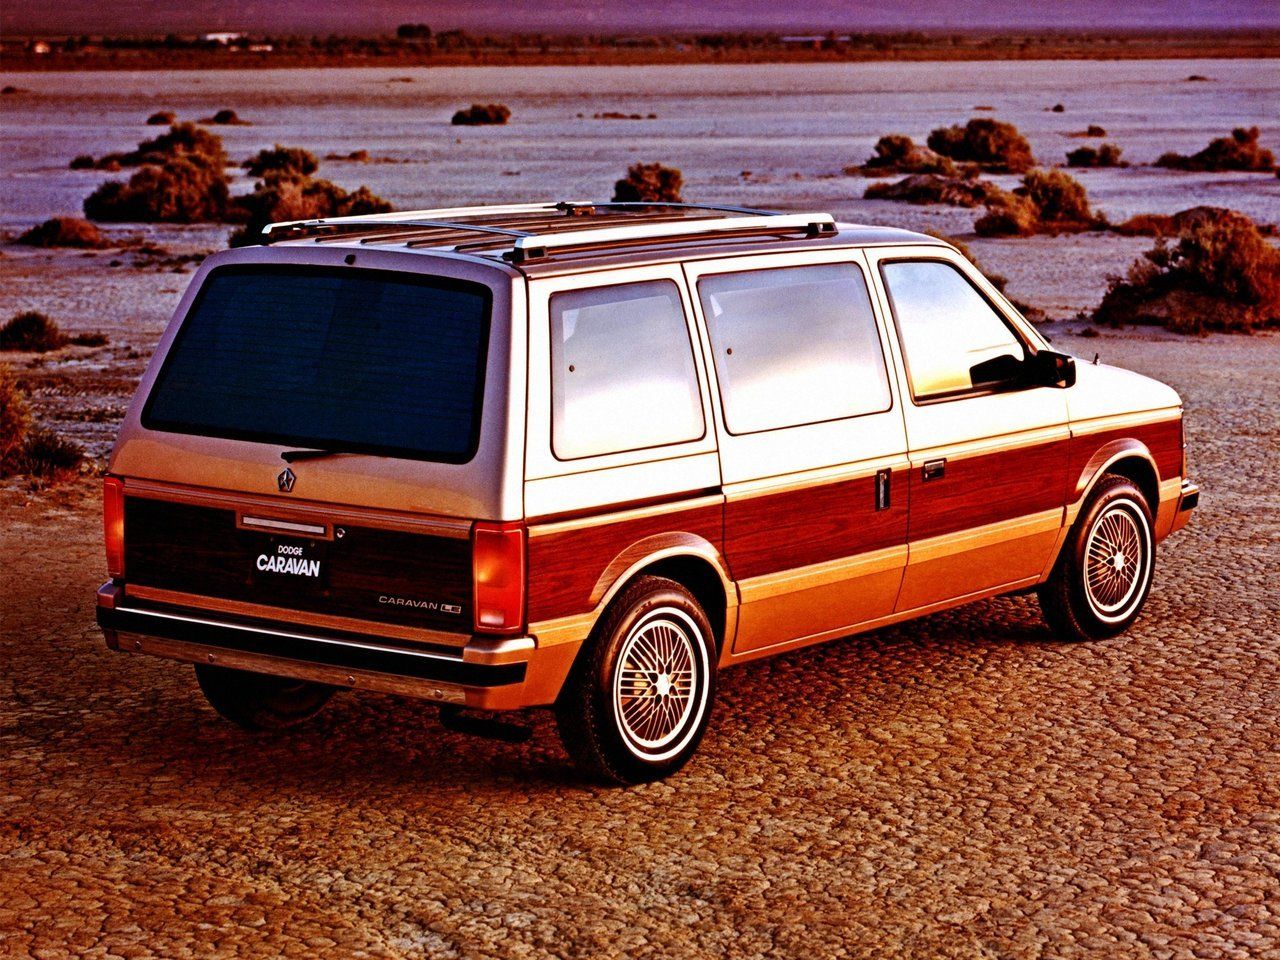 Dodge caravan 1984